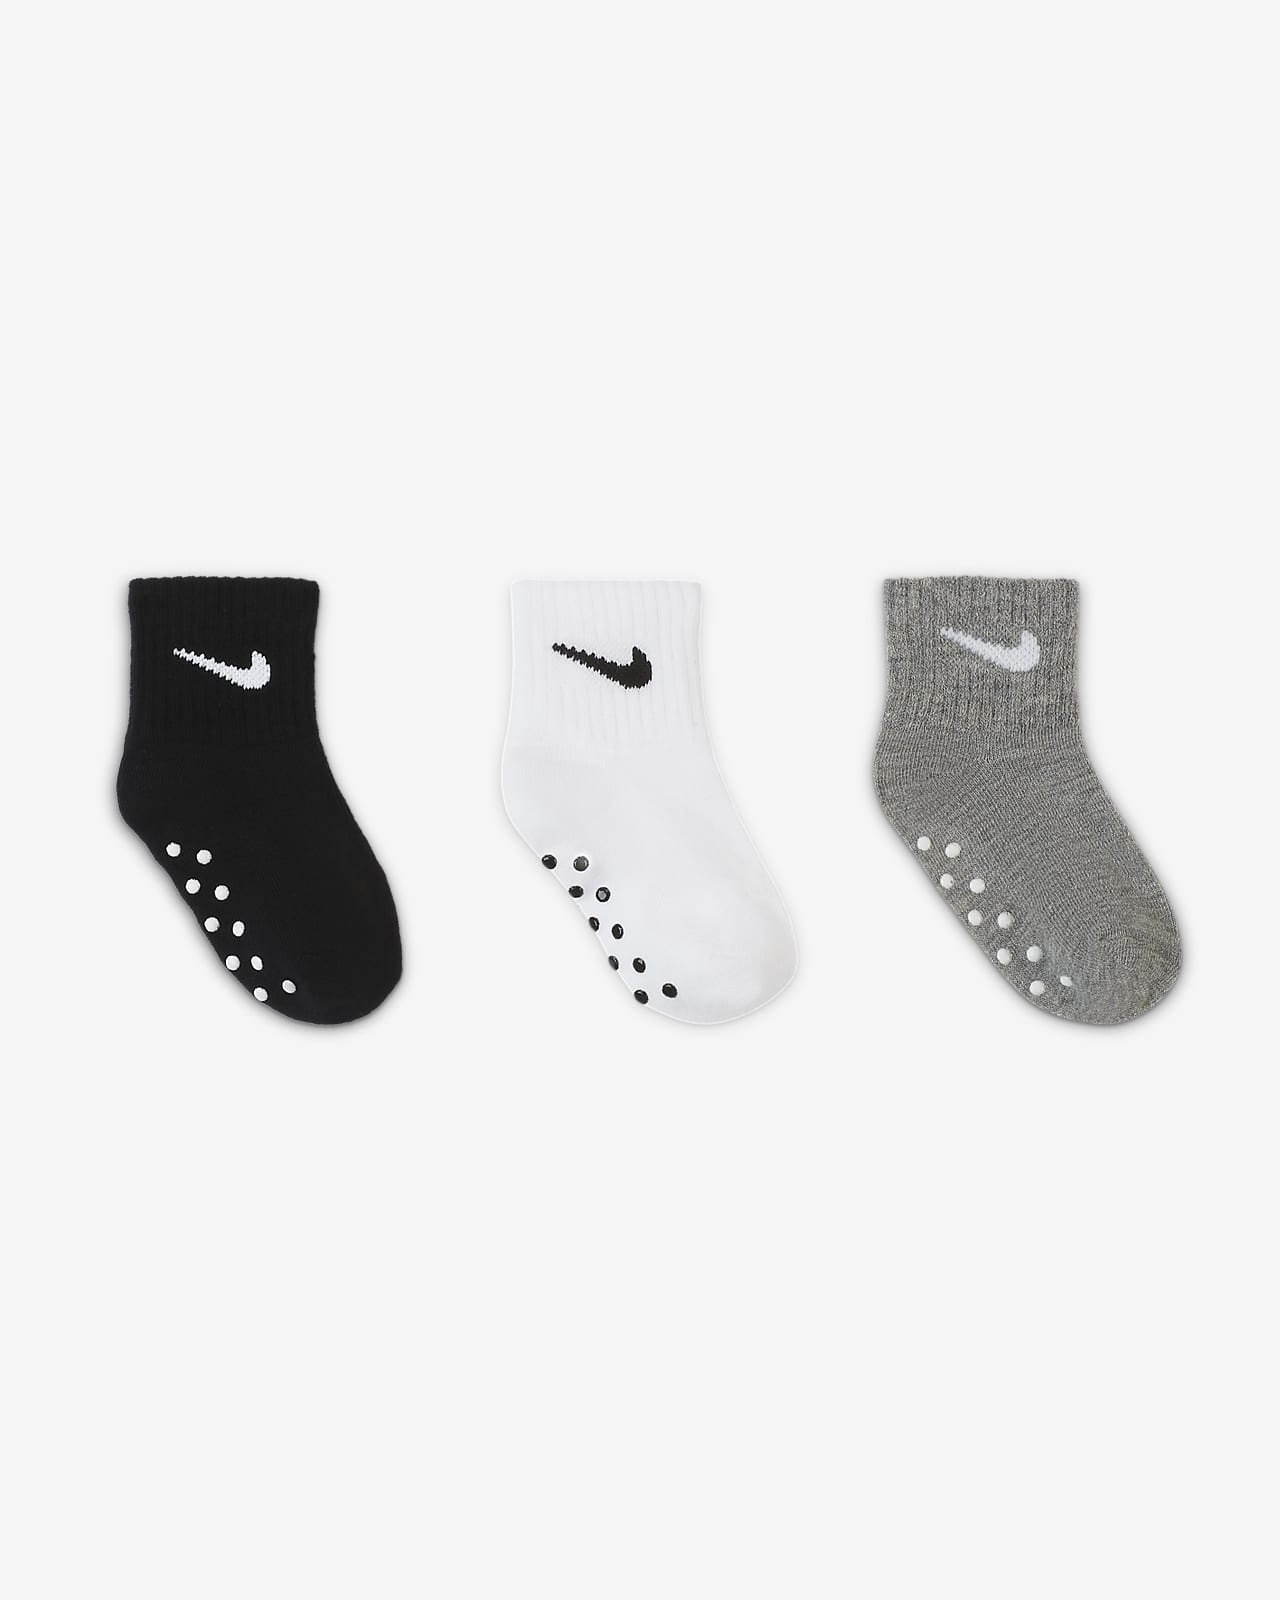 Jabeth Wilson Experto Escudriñar Calcetines hasta el tobillo para niños pequeños Nike (3 pares). Nike.com